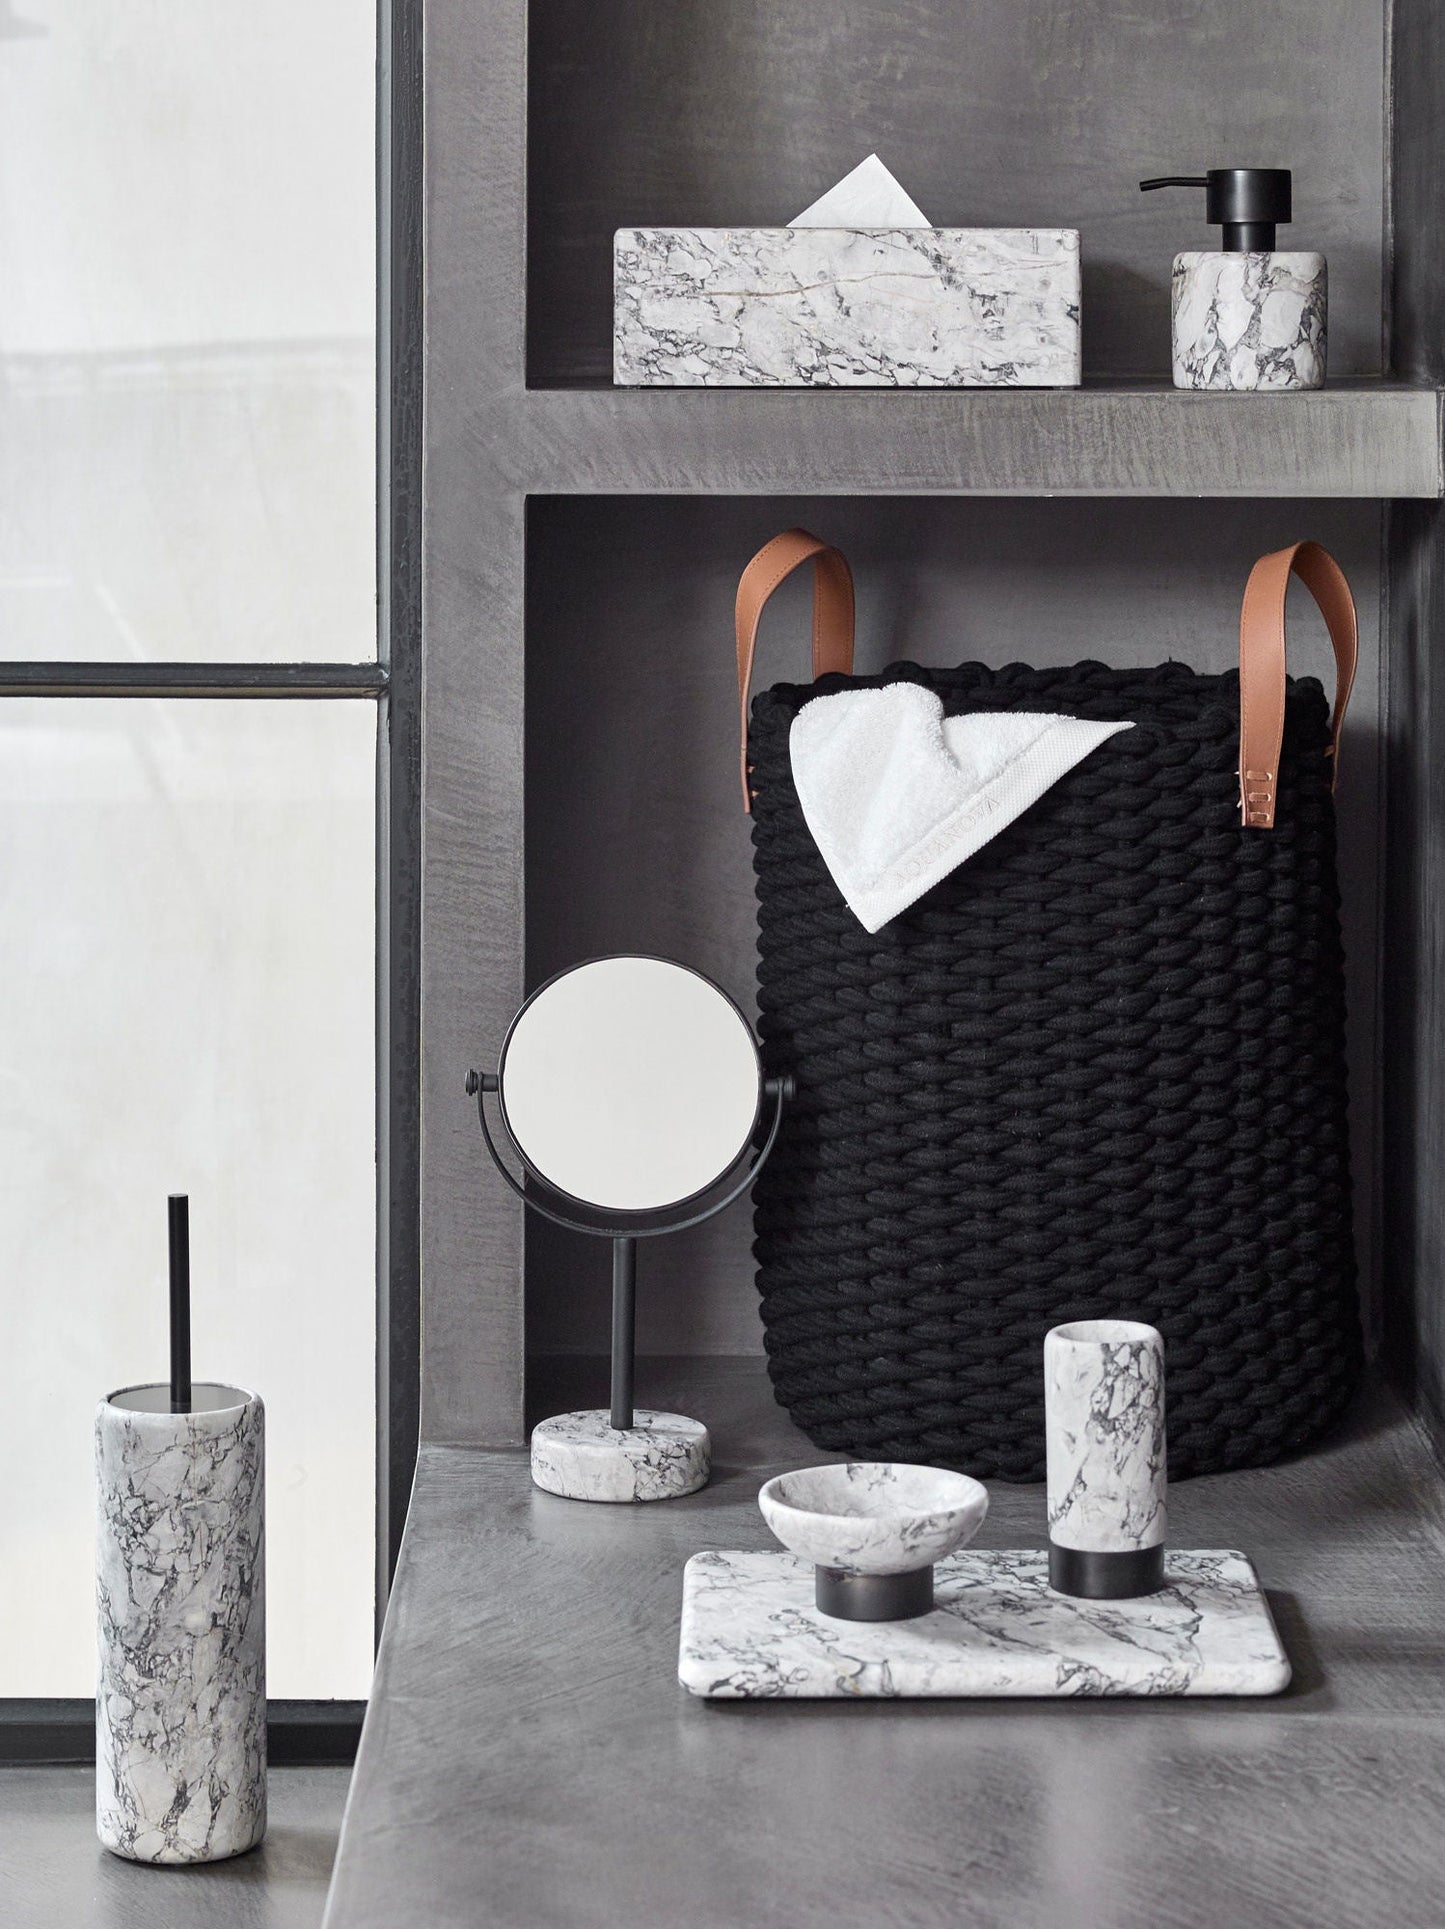 Nero White Stone Bathroom Accessories - Soap Dish - |VESIMI Design| Luxury and Rustic bathrooms online